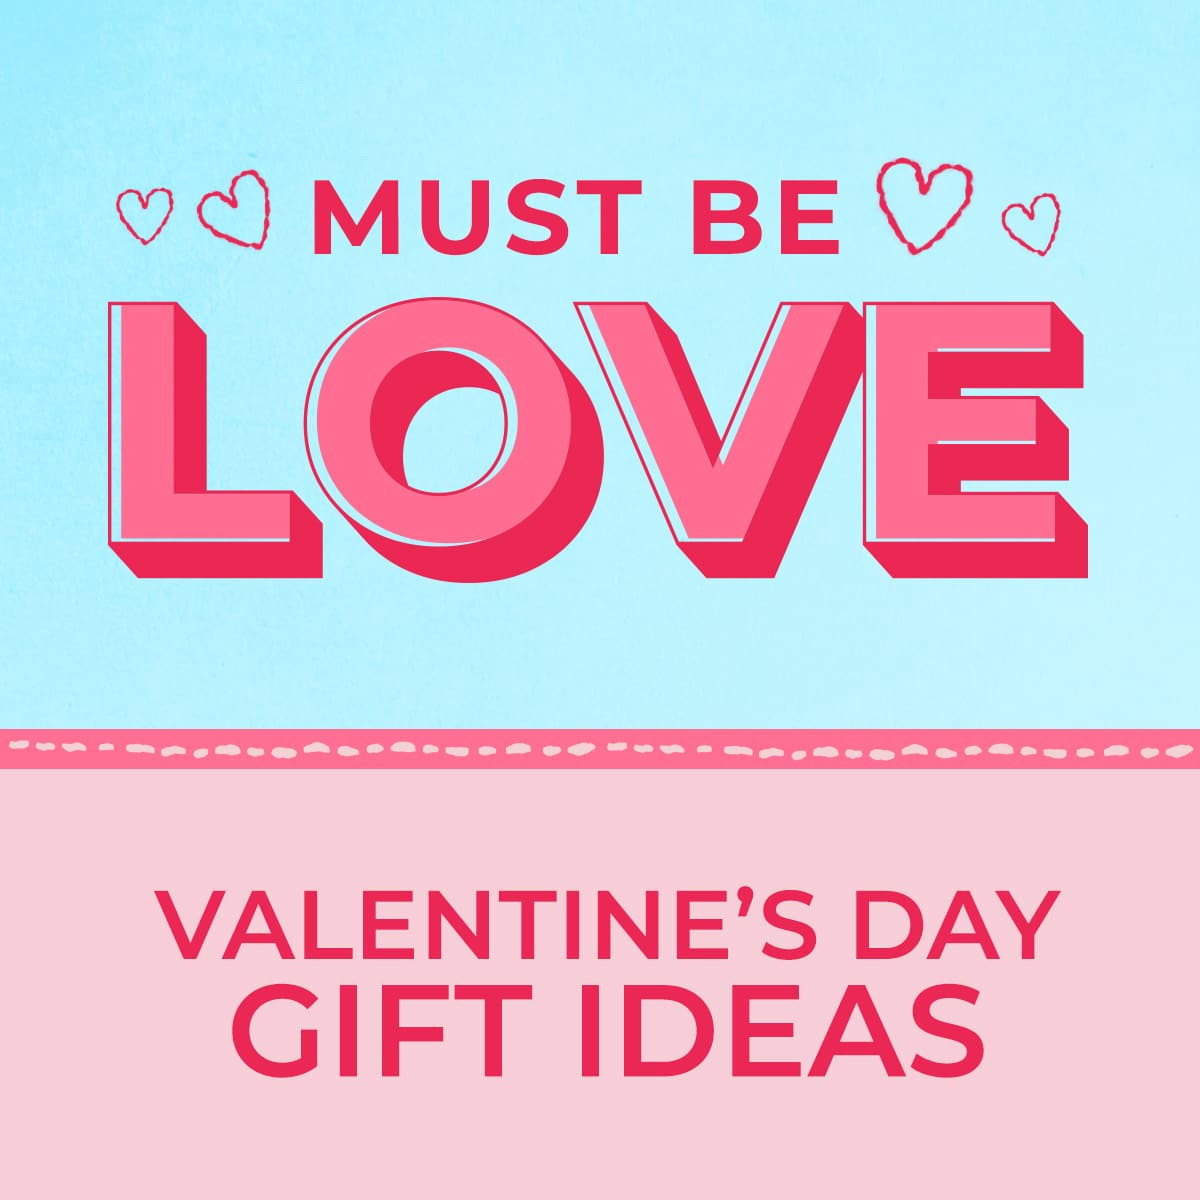 Valentine Gift Ideas For Her Uk
 Fragrance Valentine s Day 2019 Gift Ideas For Her